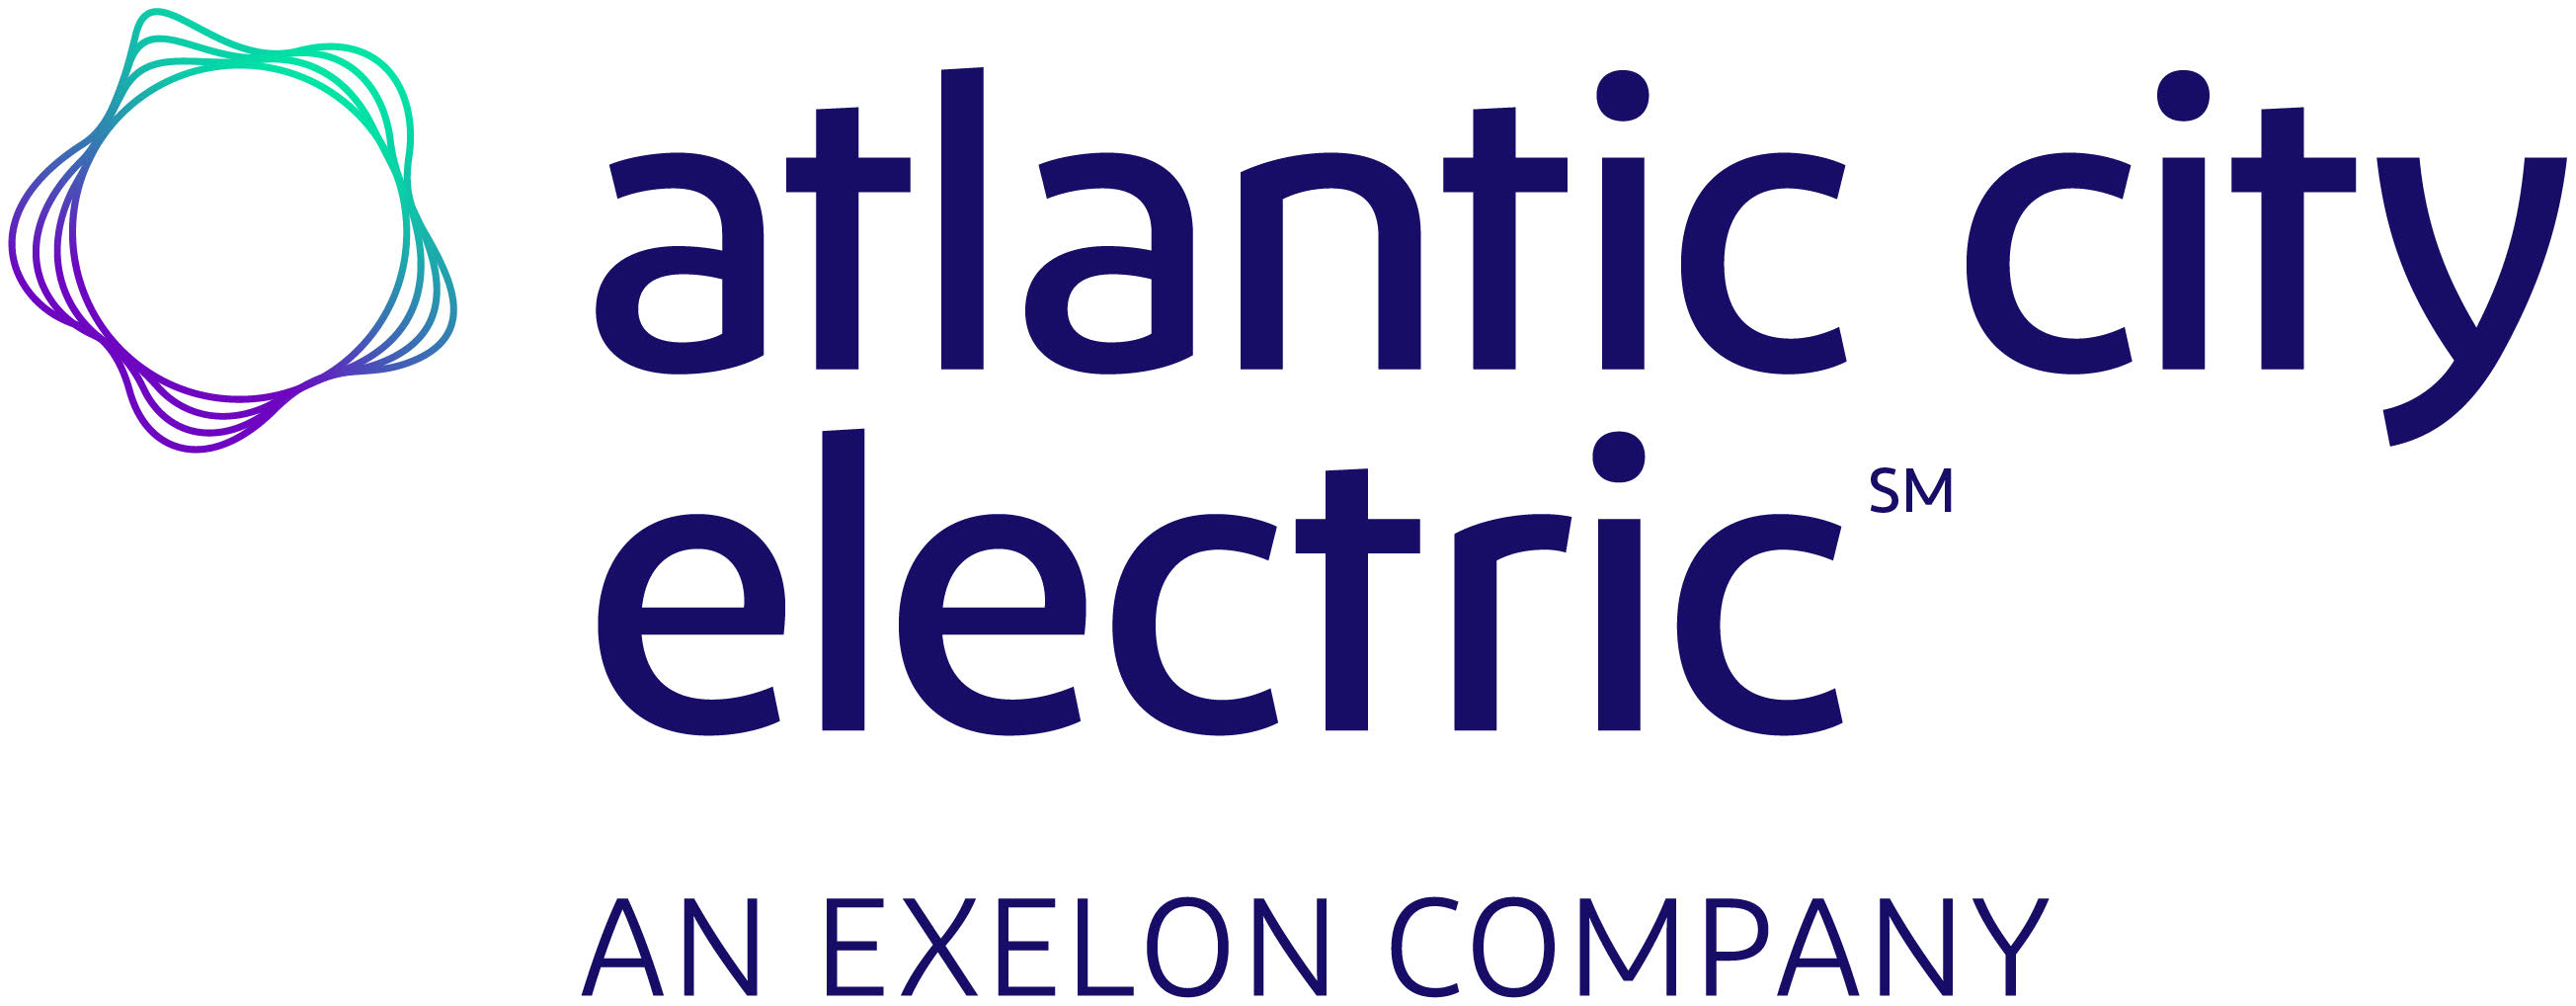 Atlantic City Electric Exelon